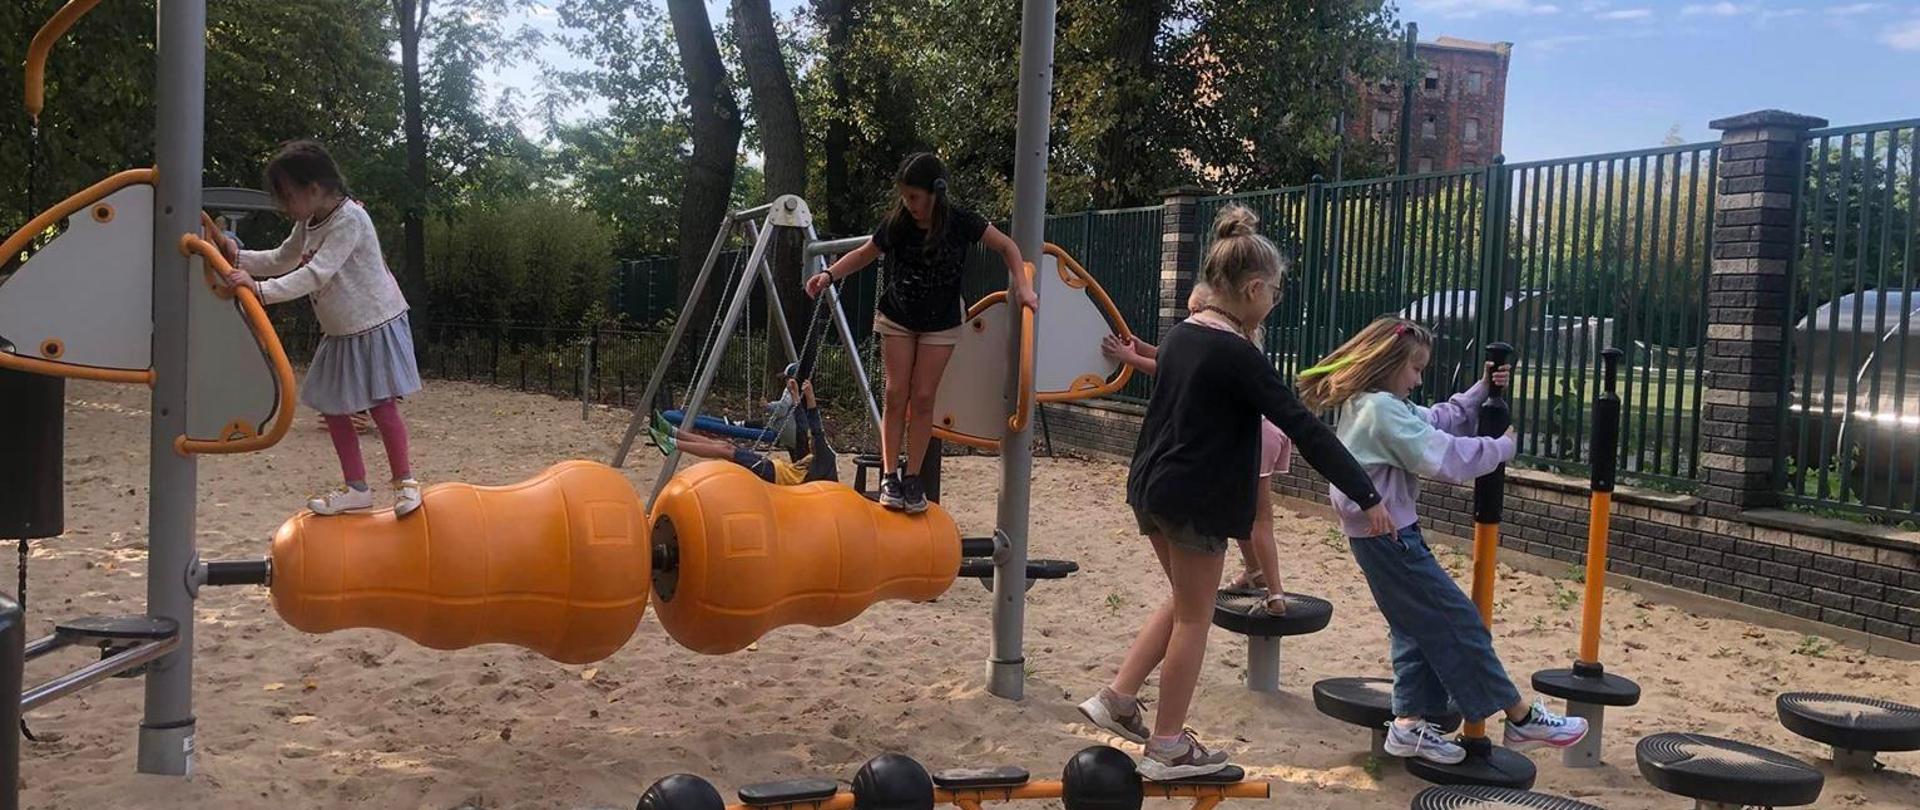 Dzieci bawią się na urządzeniach w siłowni w parku